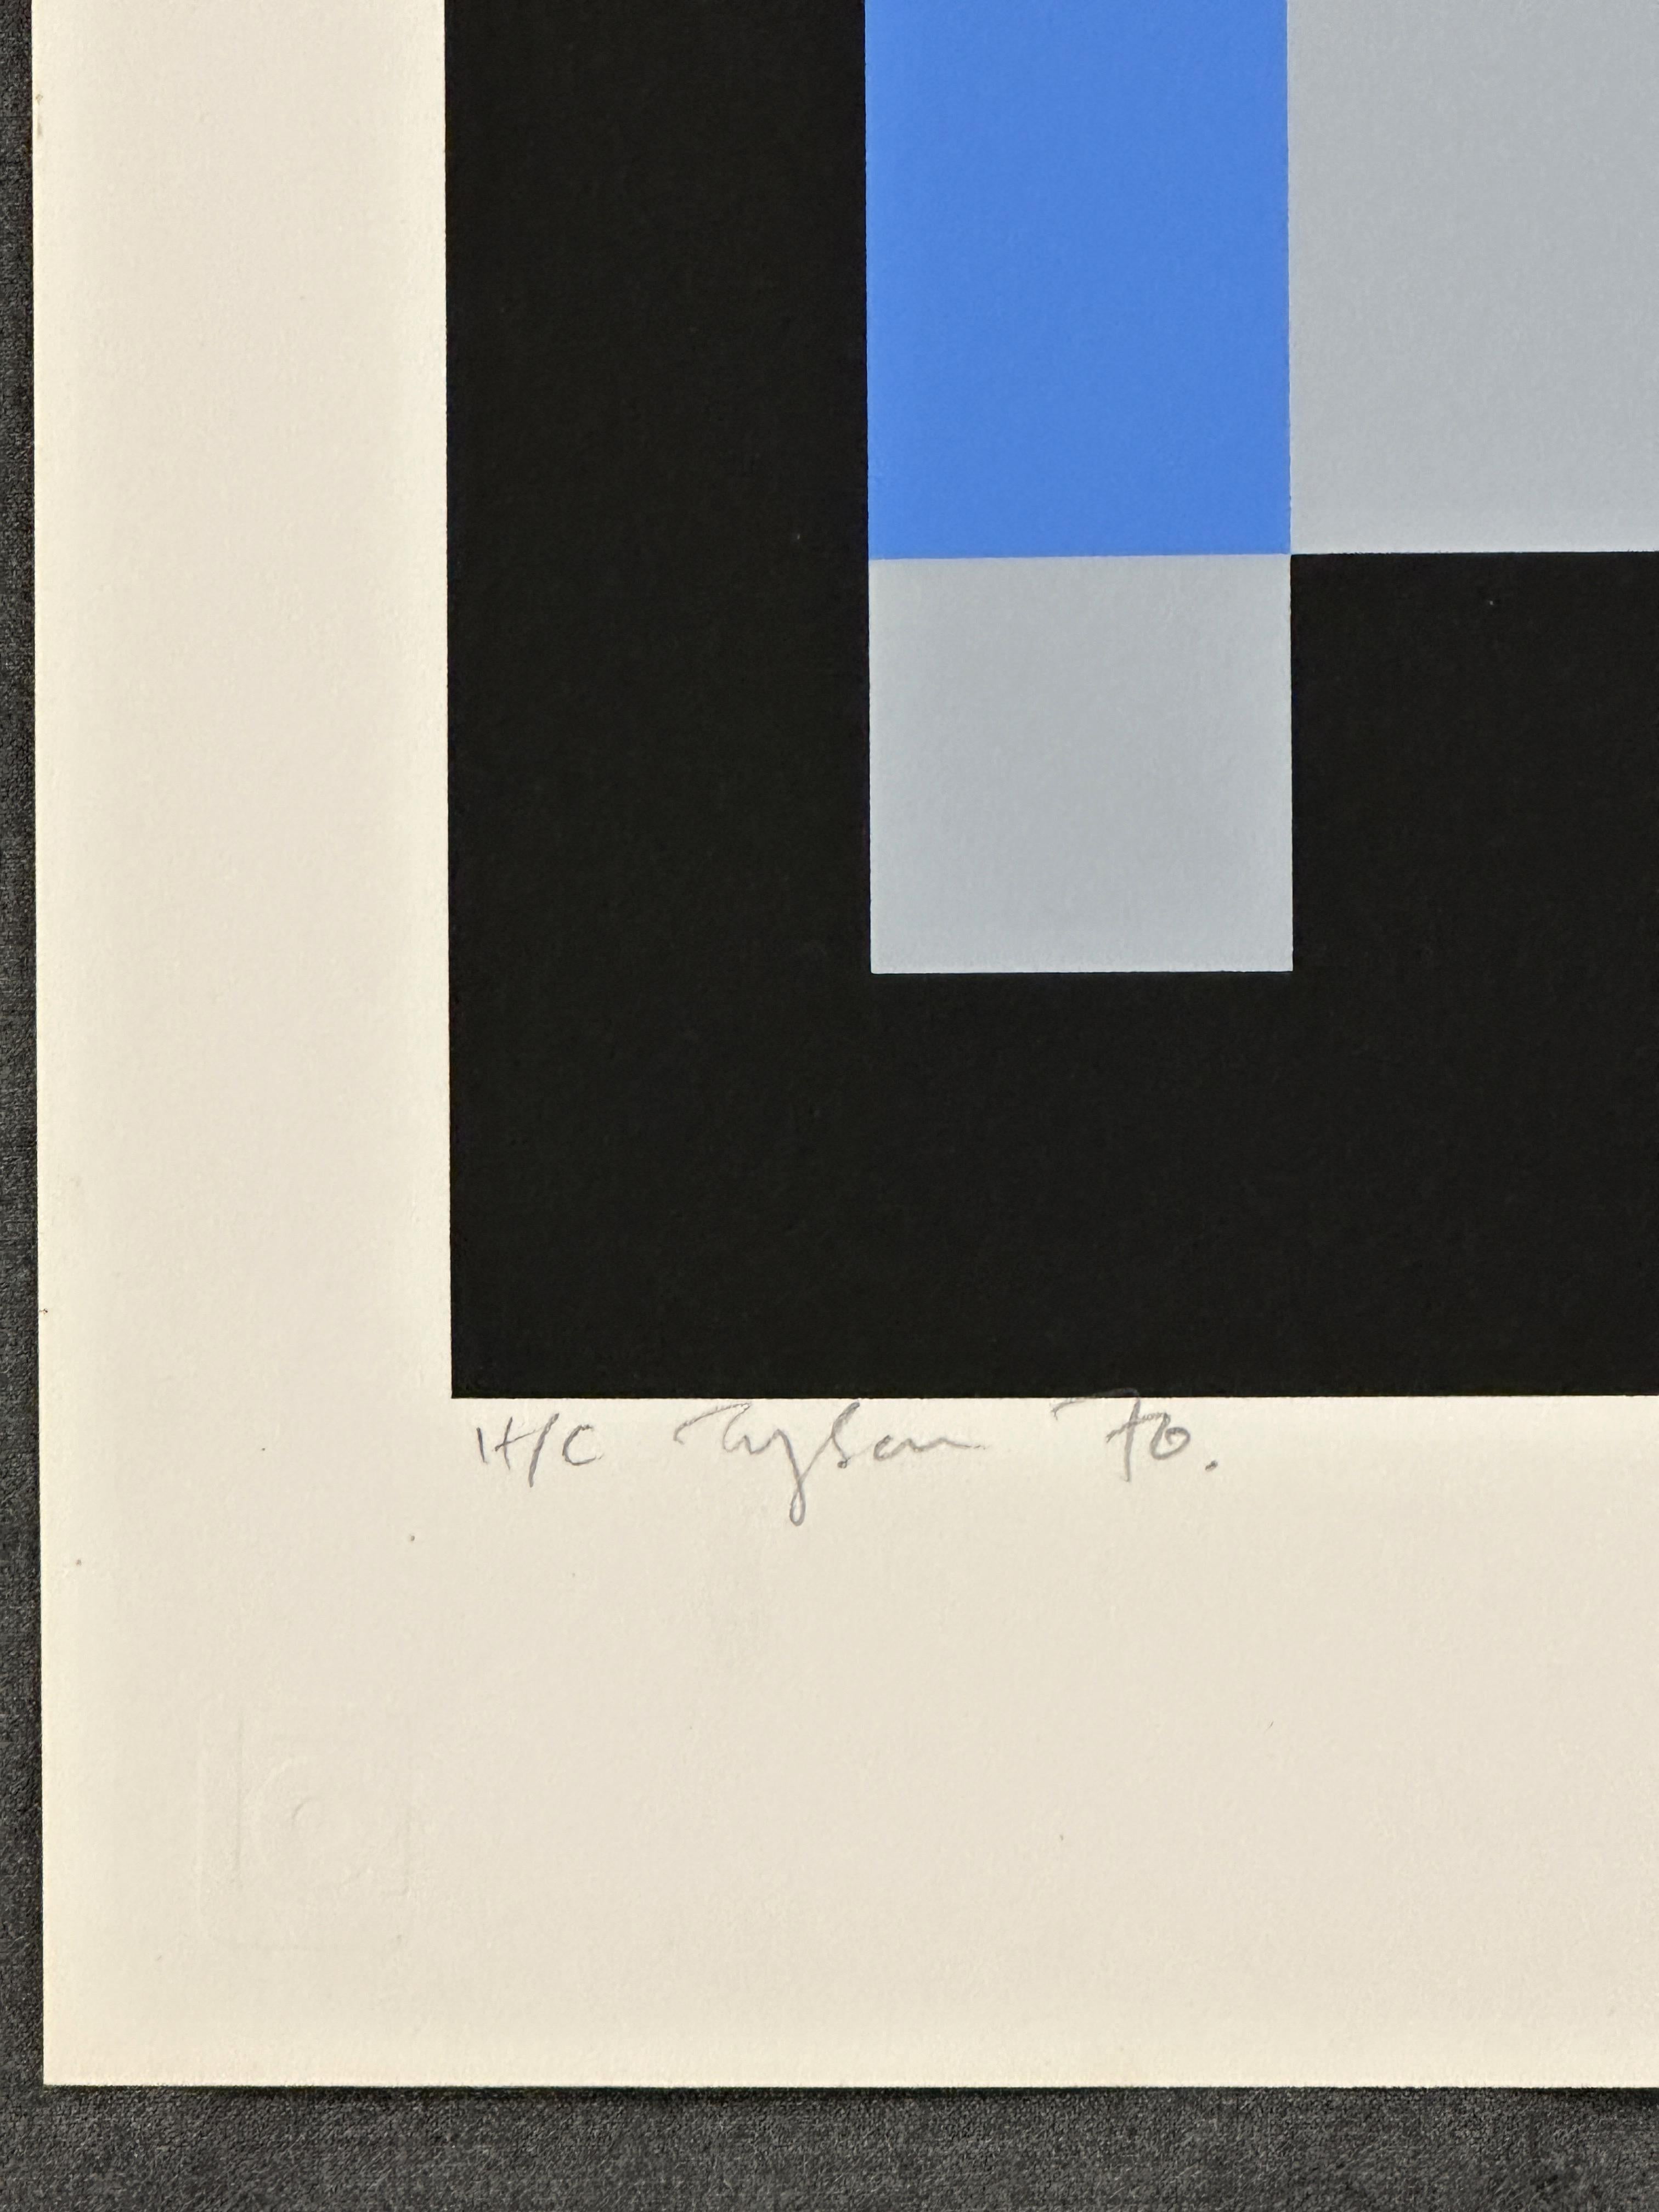  Diversions 1970 Impression sérigraphiée en édition limitée signée - Géométrique abstrait Print par Ian Tyson